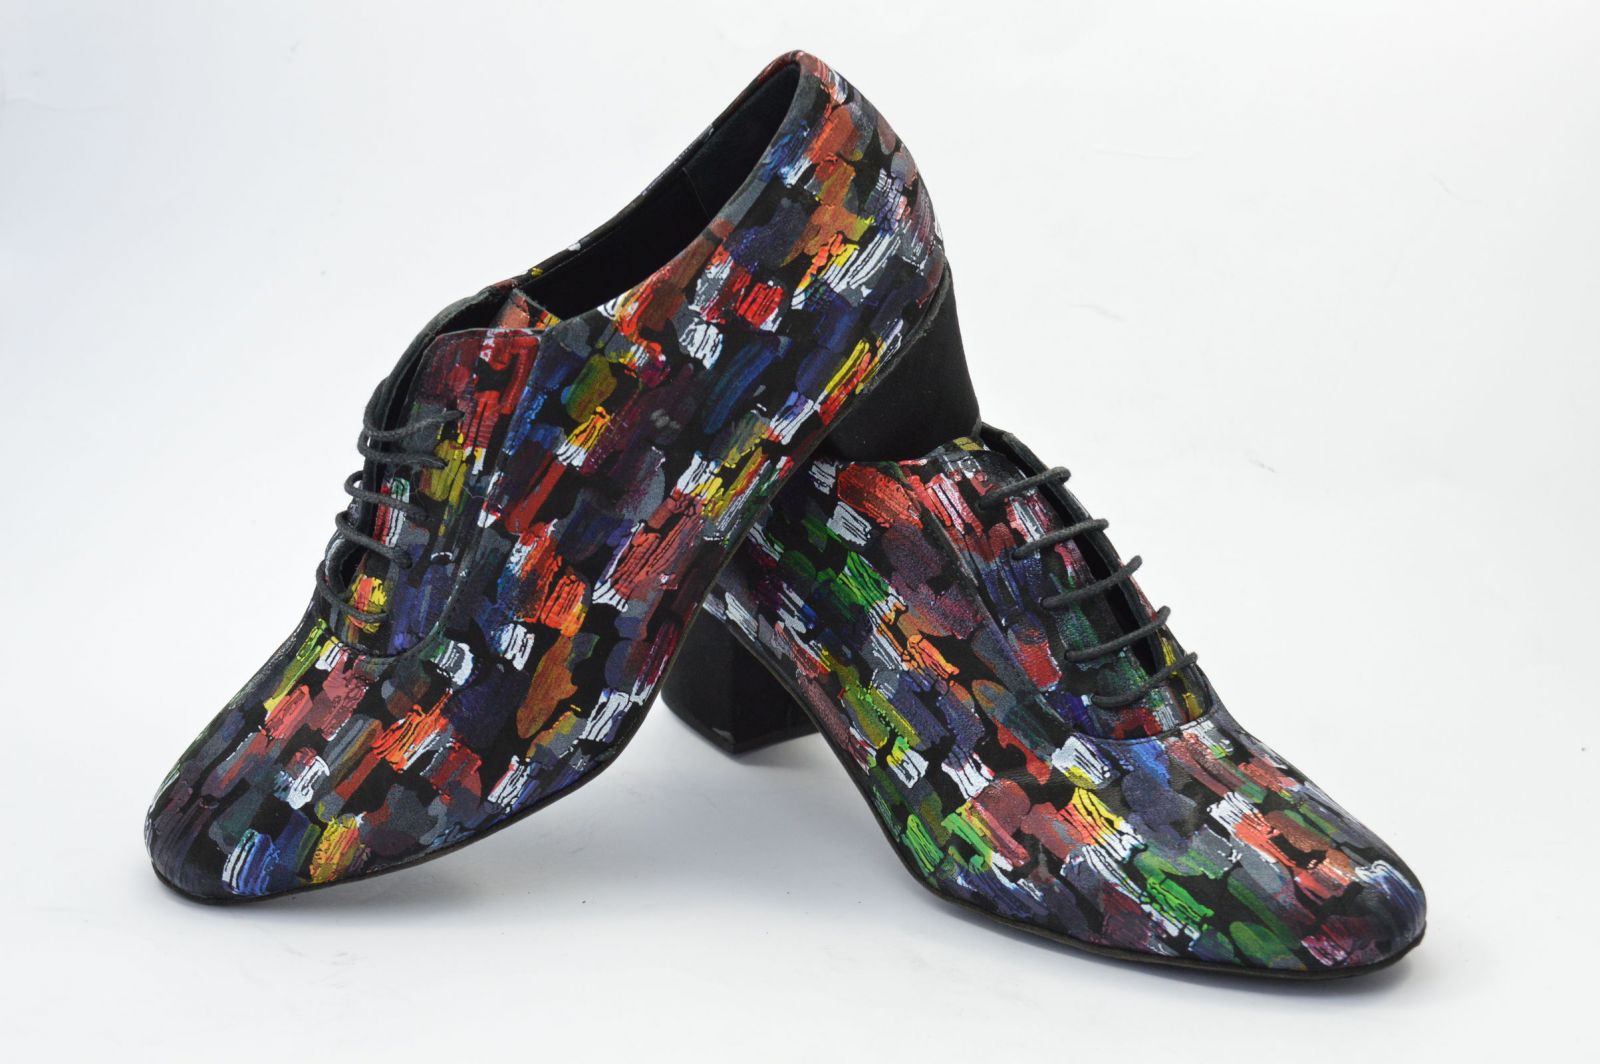 Γυναικείο παπούτσι tango κλειστού τύπου από πολύ μαλακό μαύρο δέρμα με πολύχρωμα αφηρημένα σχέδια